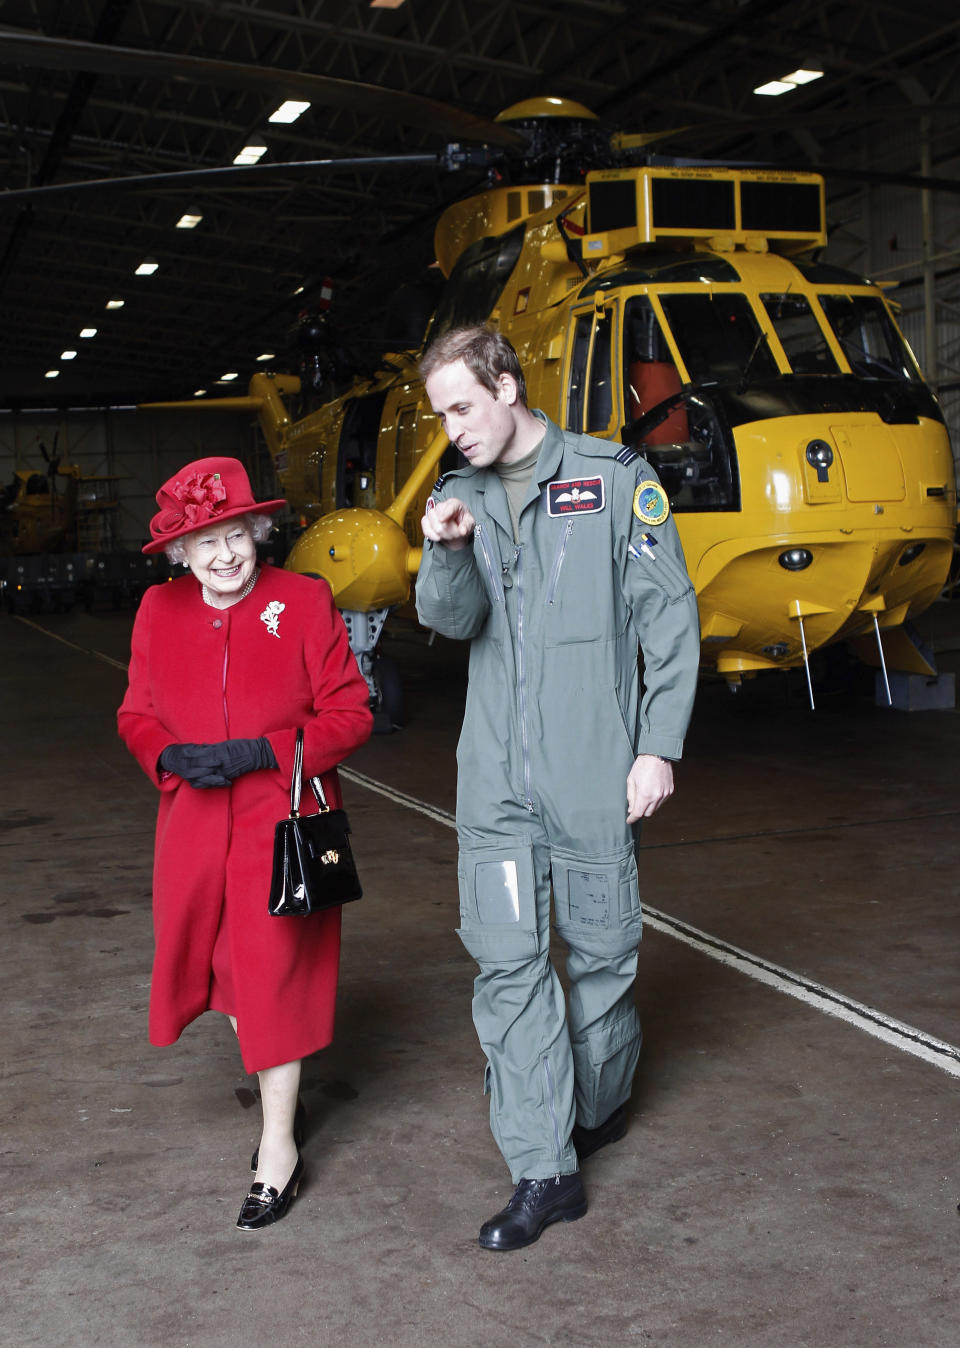 ARCHIVO - La reina Isabel II de Gran Bretaña es escoltada por el príncipe Guillermo durante una visita a RAF Valley, Anglesey, Gales, donde él está estacionado como piloto de helicóptero de búsqueda y rescate, el 1 de abril de 2011. (Christopher Furlong, Pool Photo vía AP, archivo)